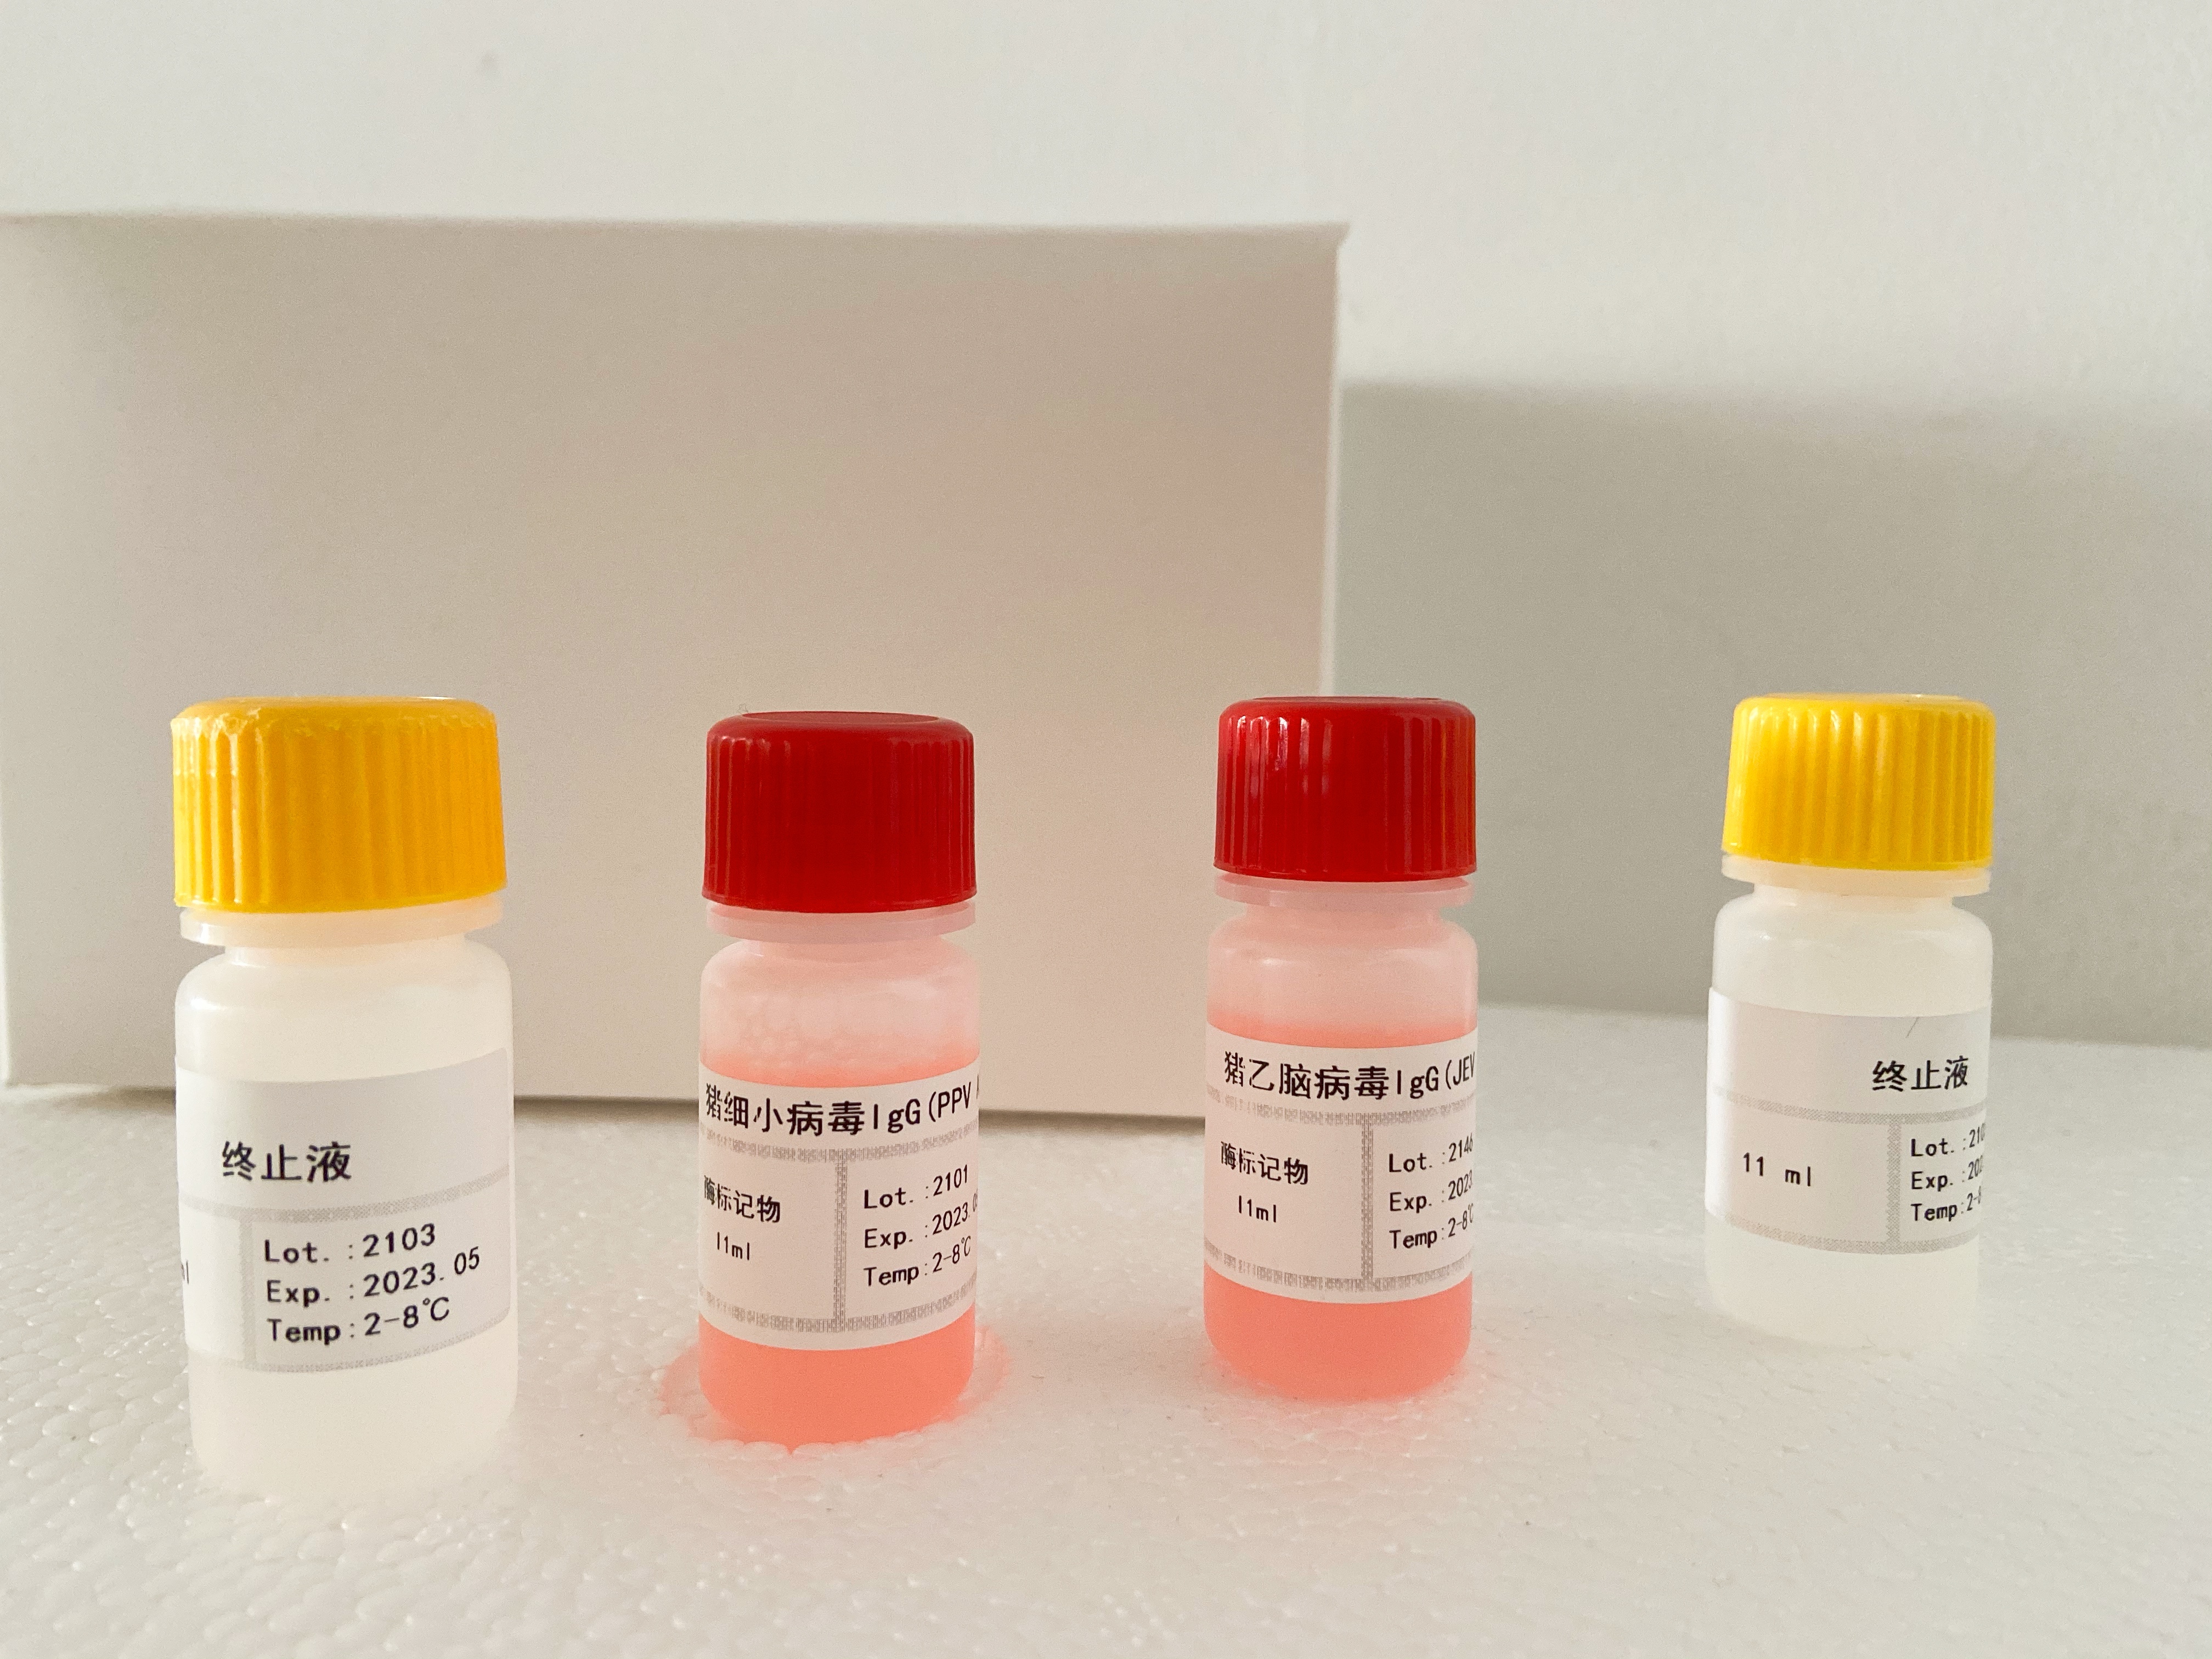 小鼠钙卫蛋白(CALP)检测试剂盒